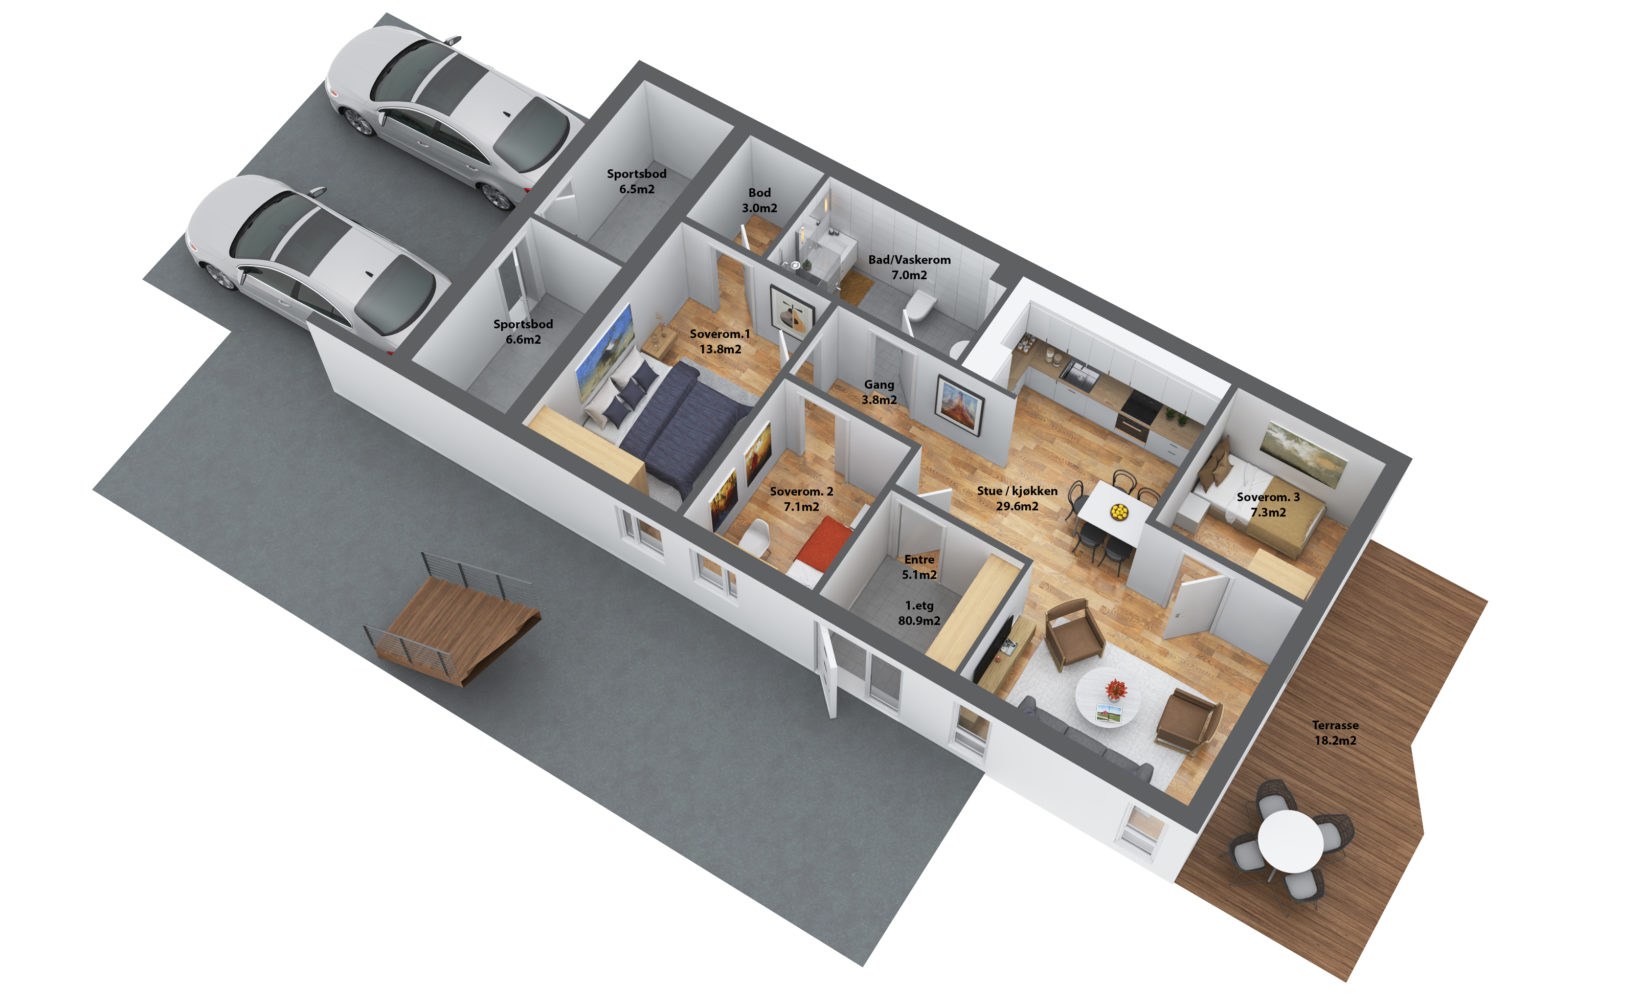 En planløsning av et hus med to soverom og stue visualisert for salg i 2017 av DNB Eiendom.